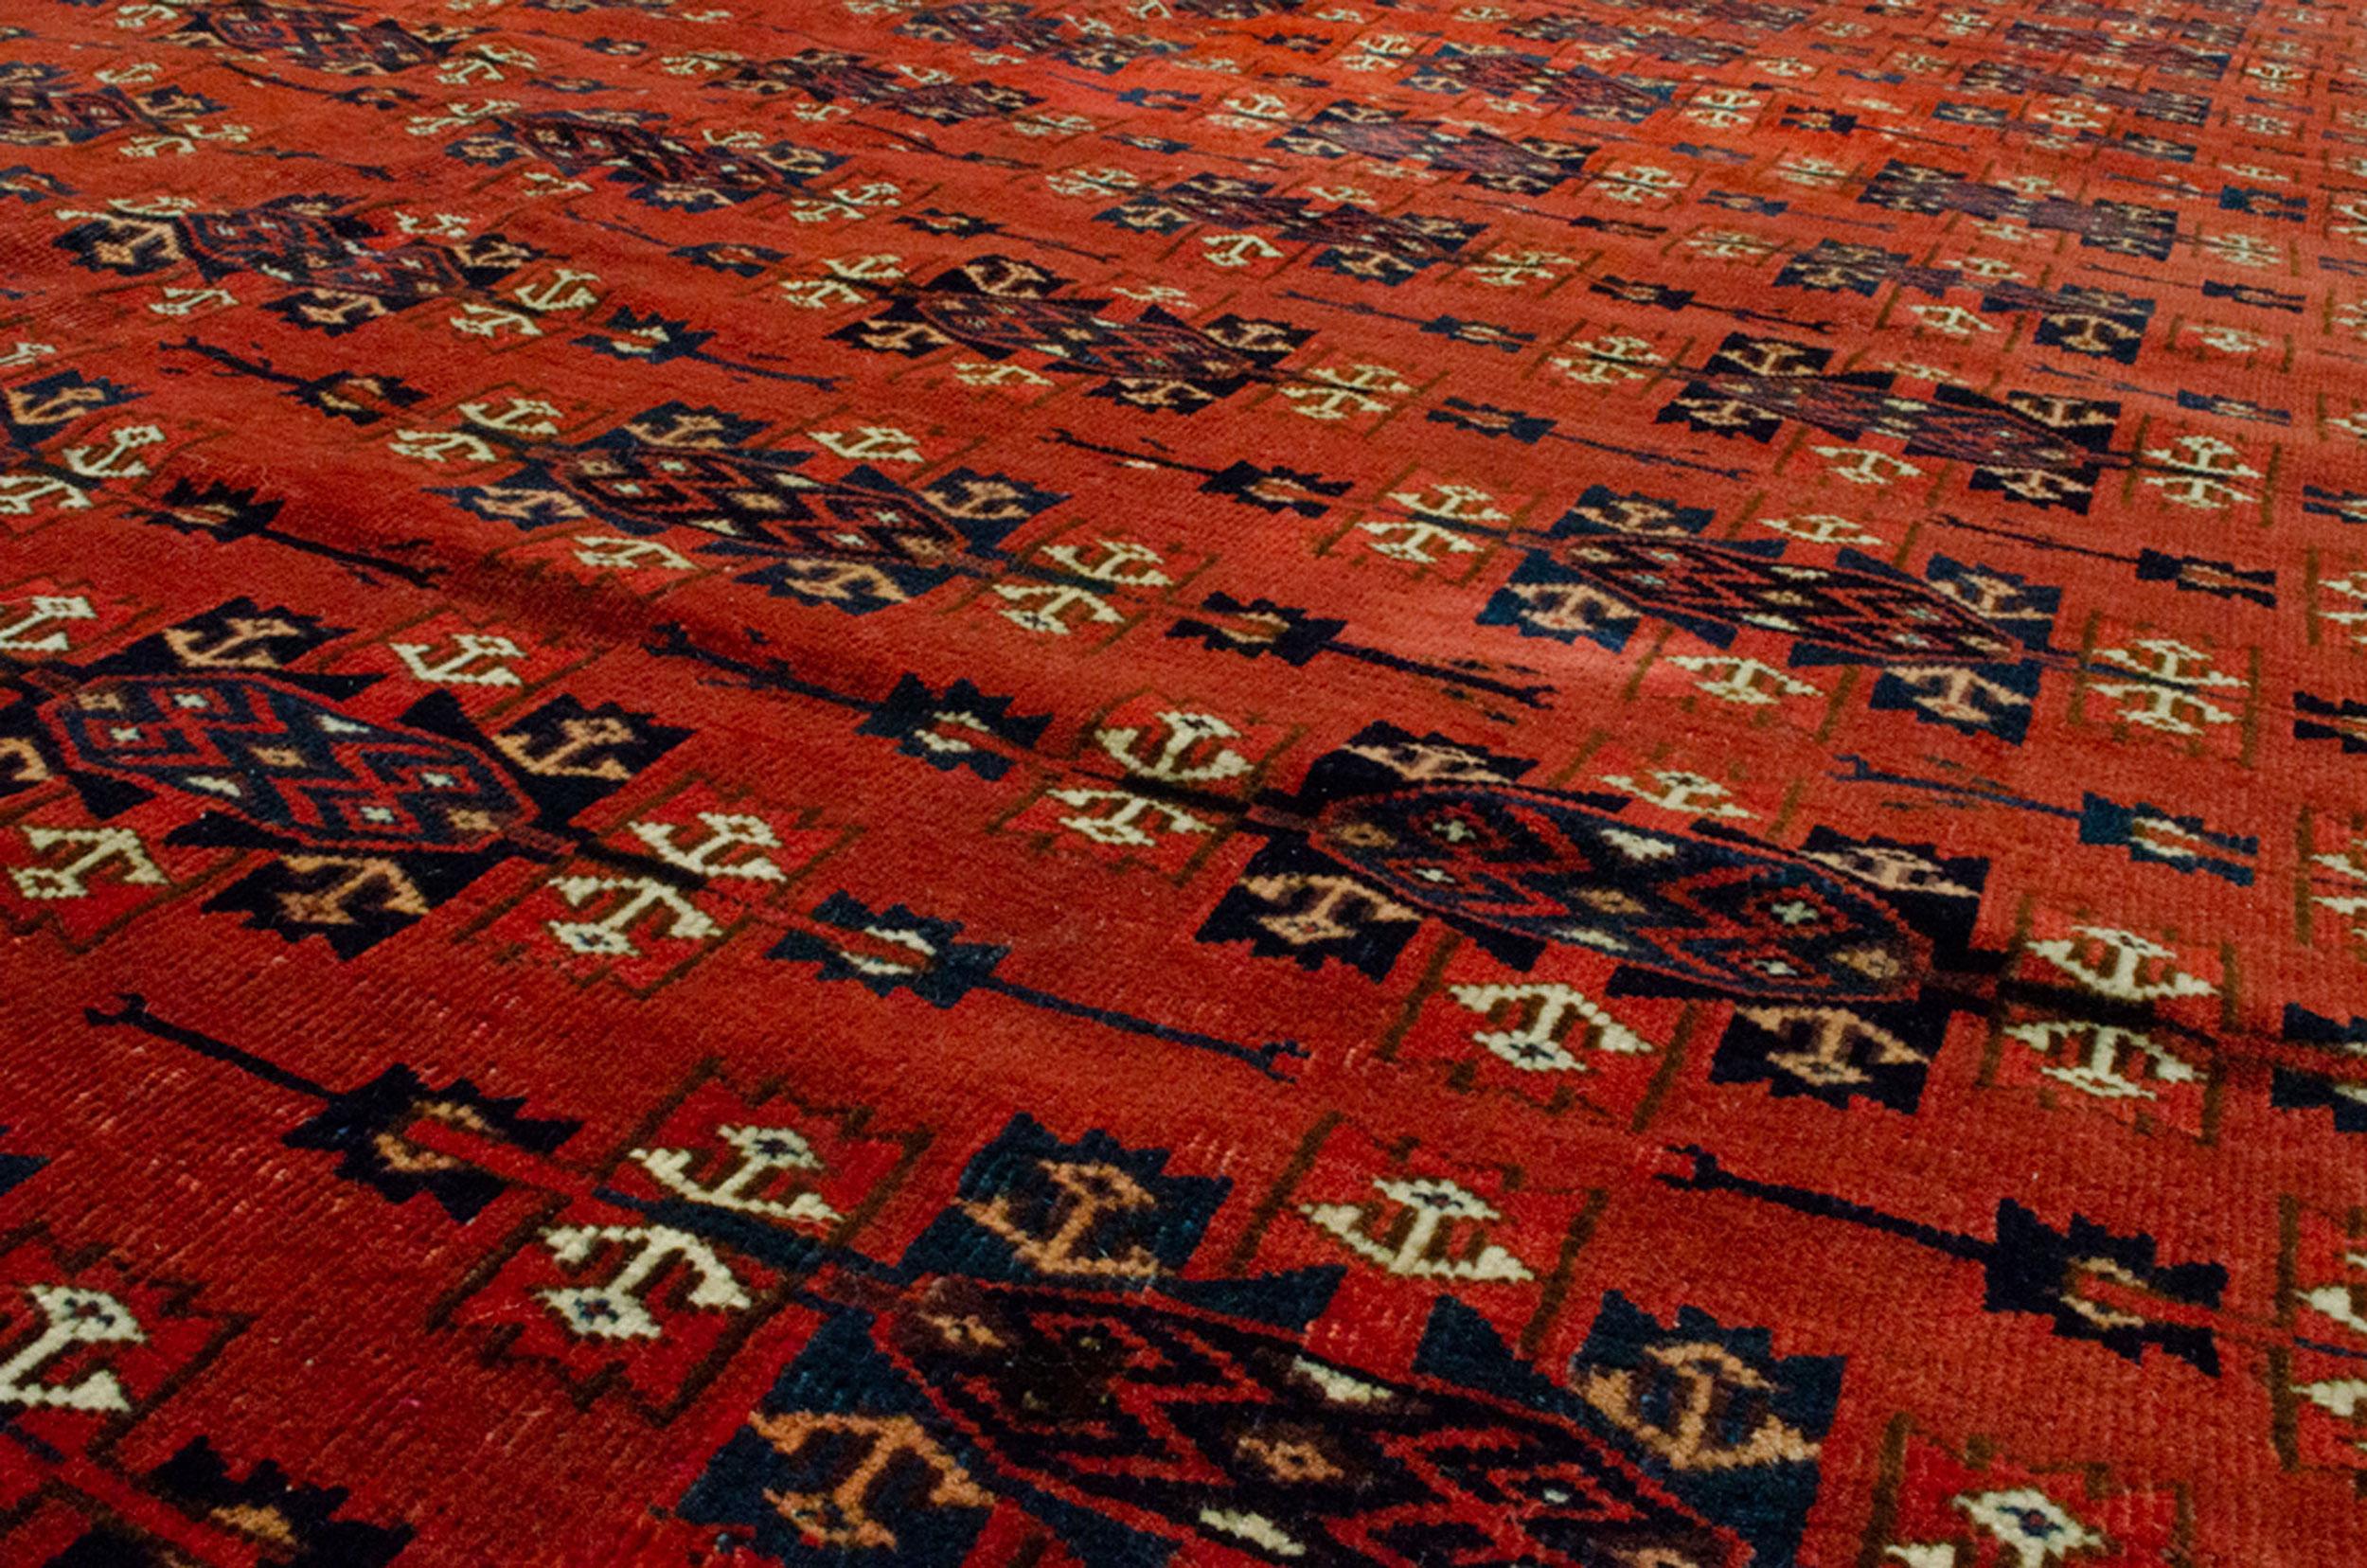 Turkmenische Teppiche waren schon immer ein begehrtes Dekorationsobjekt. Sie eignen sich als Bibliotheksteppich oder als Esszimmerteppich, da sie ein All-Over-Design haben. Dieser Yamoud Turkmen mit seinem ganzflächigen Kepse Gul auf einem sattroten